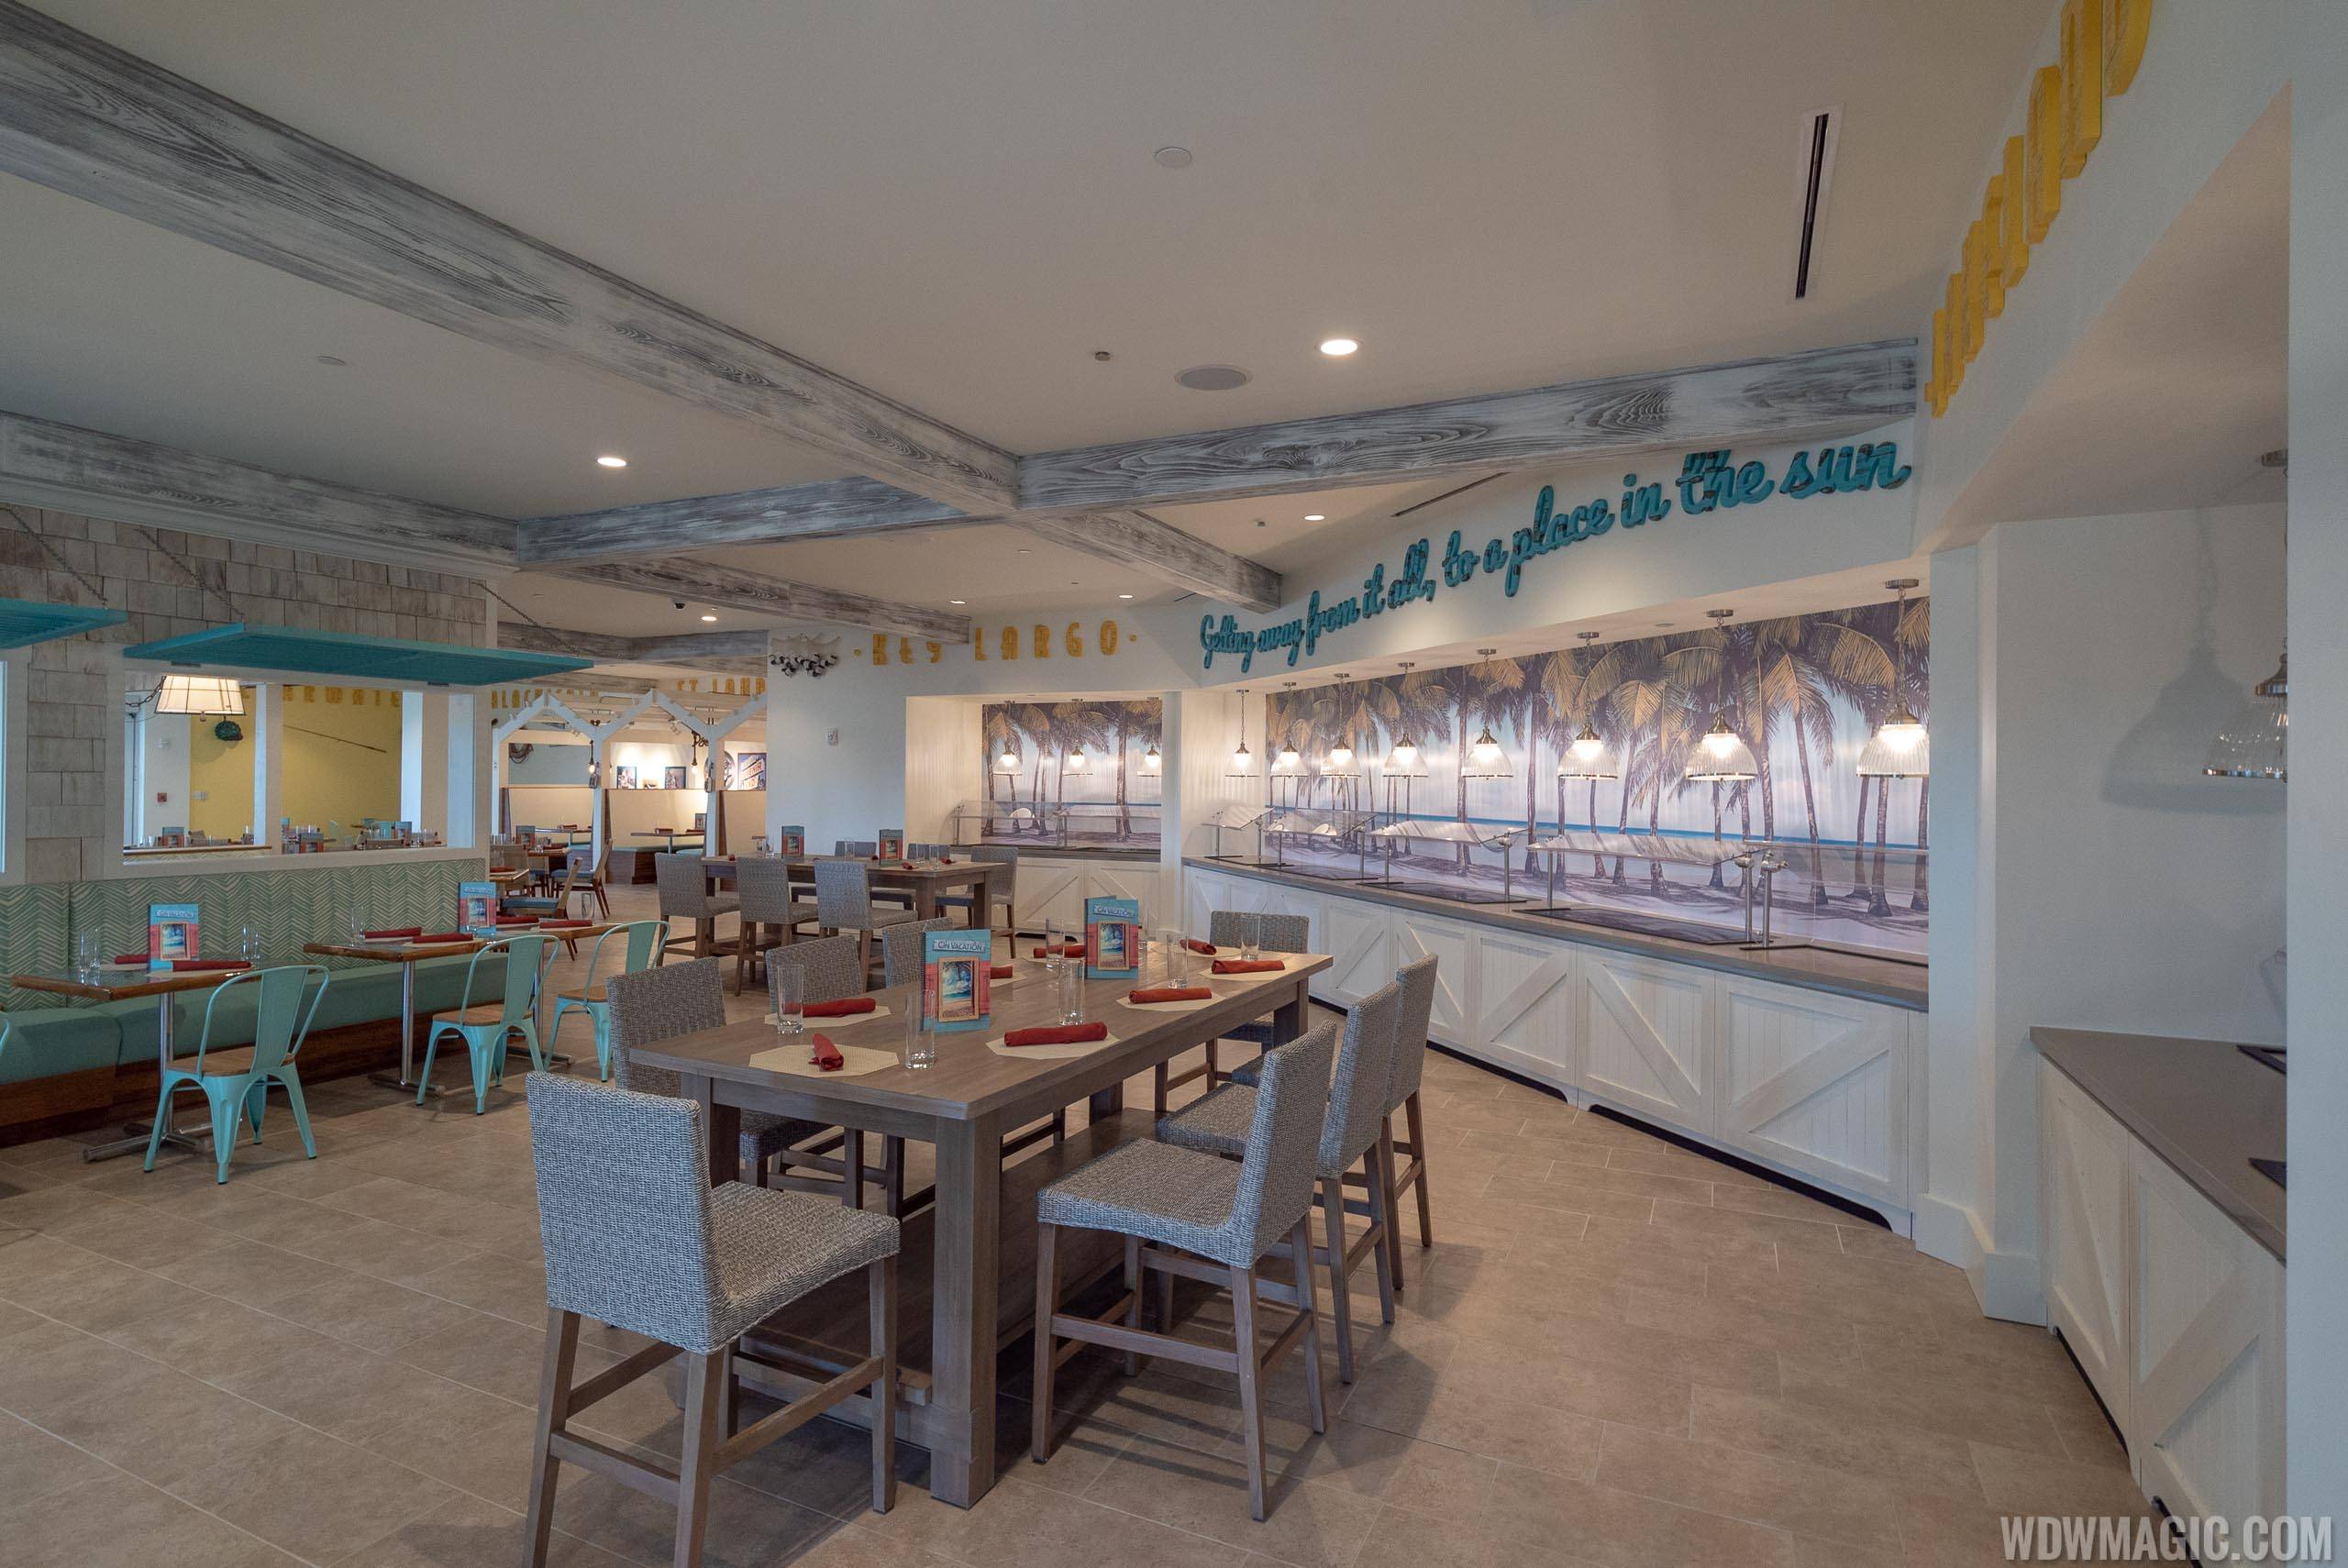 Margaritaville Resort Orlando - Inside On Vacation Restaurant